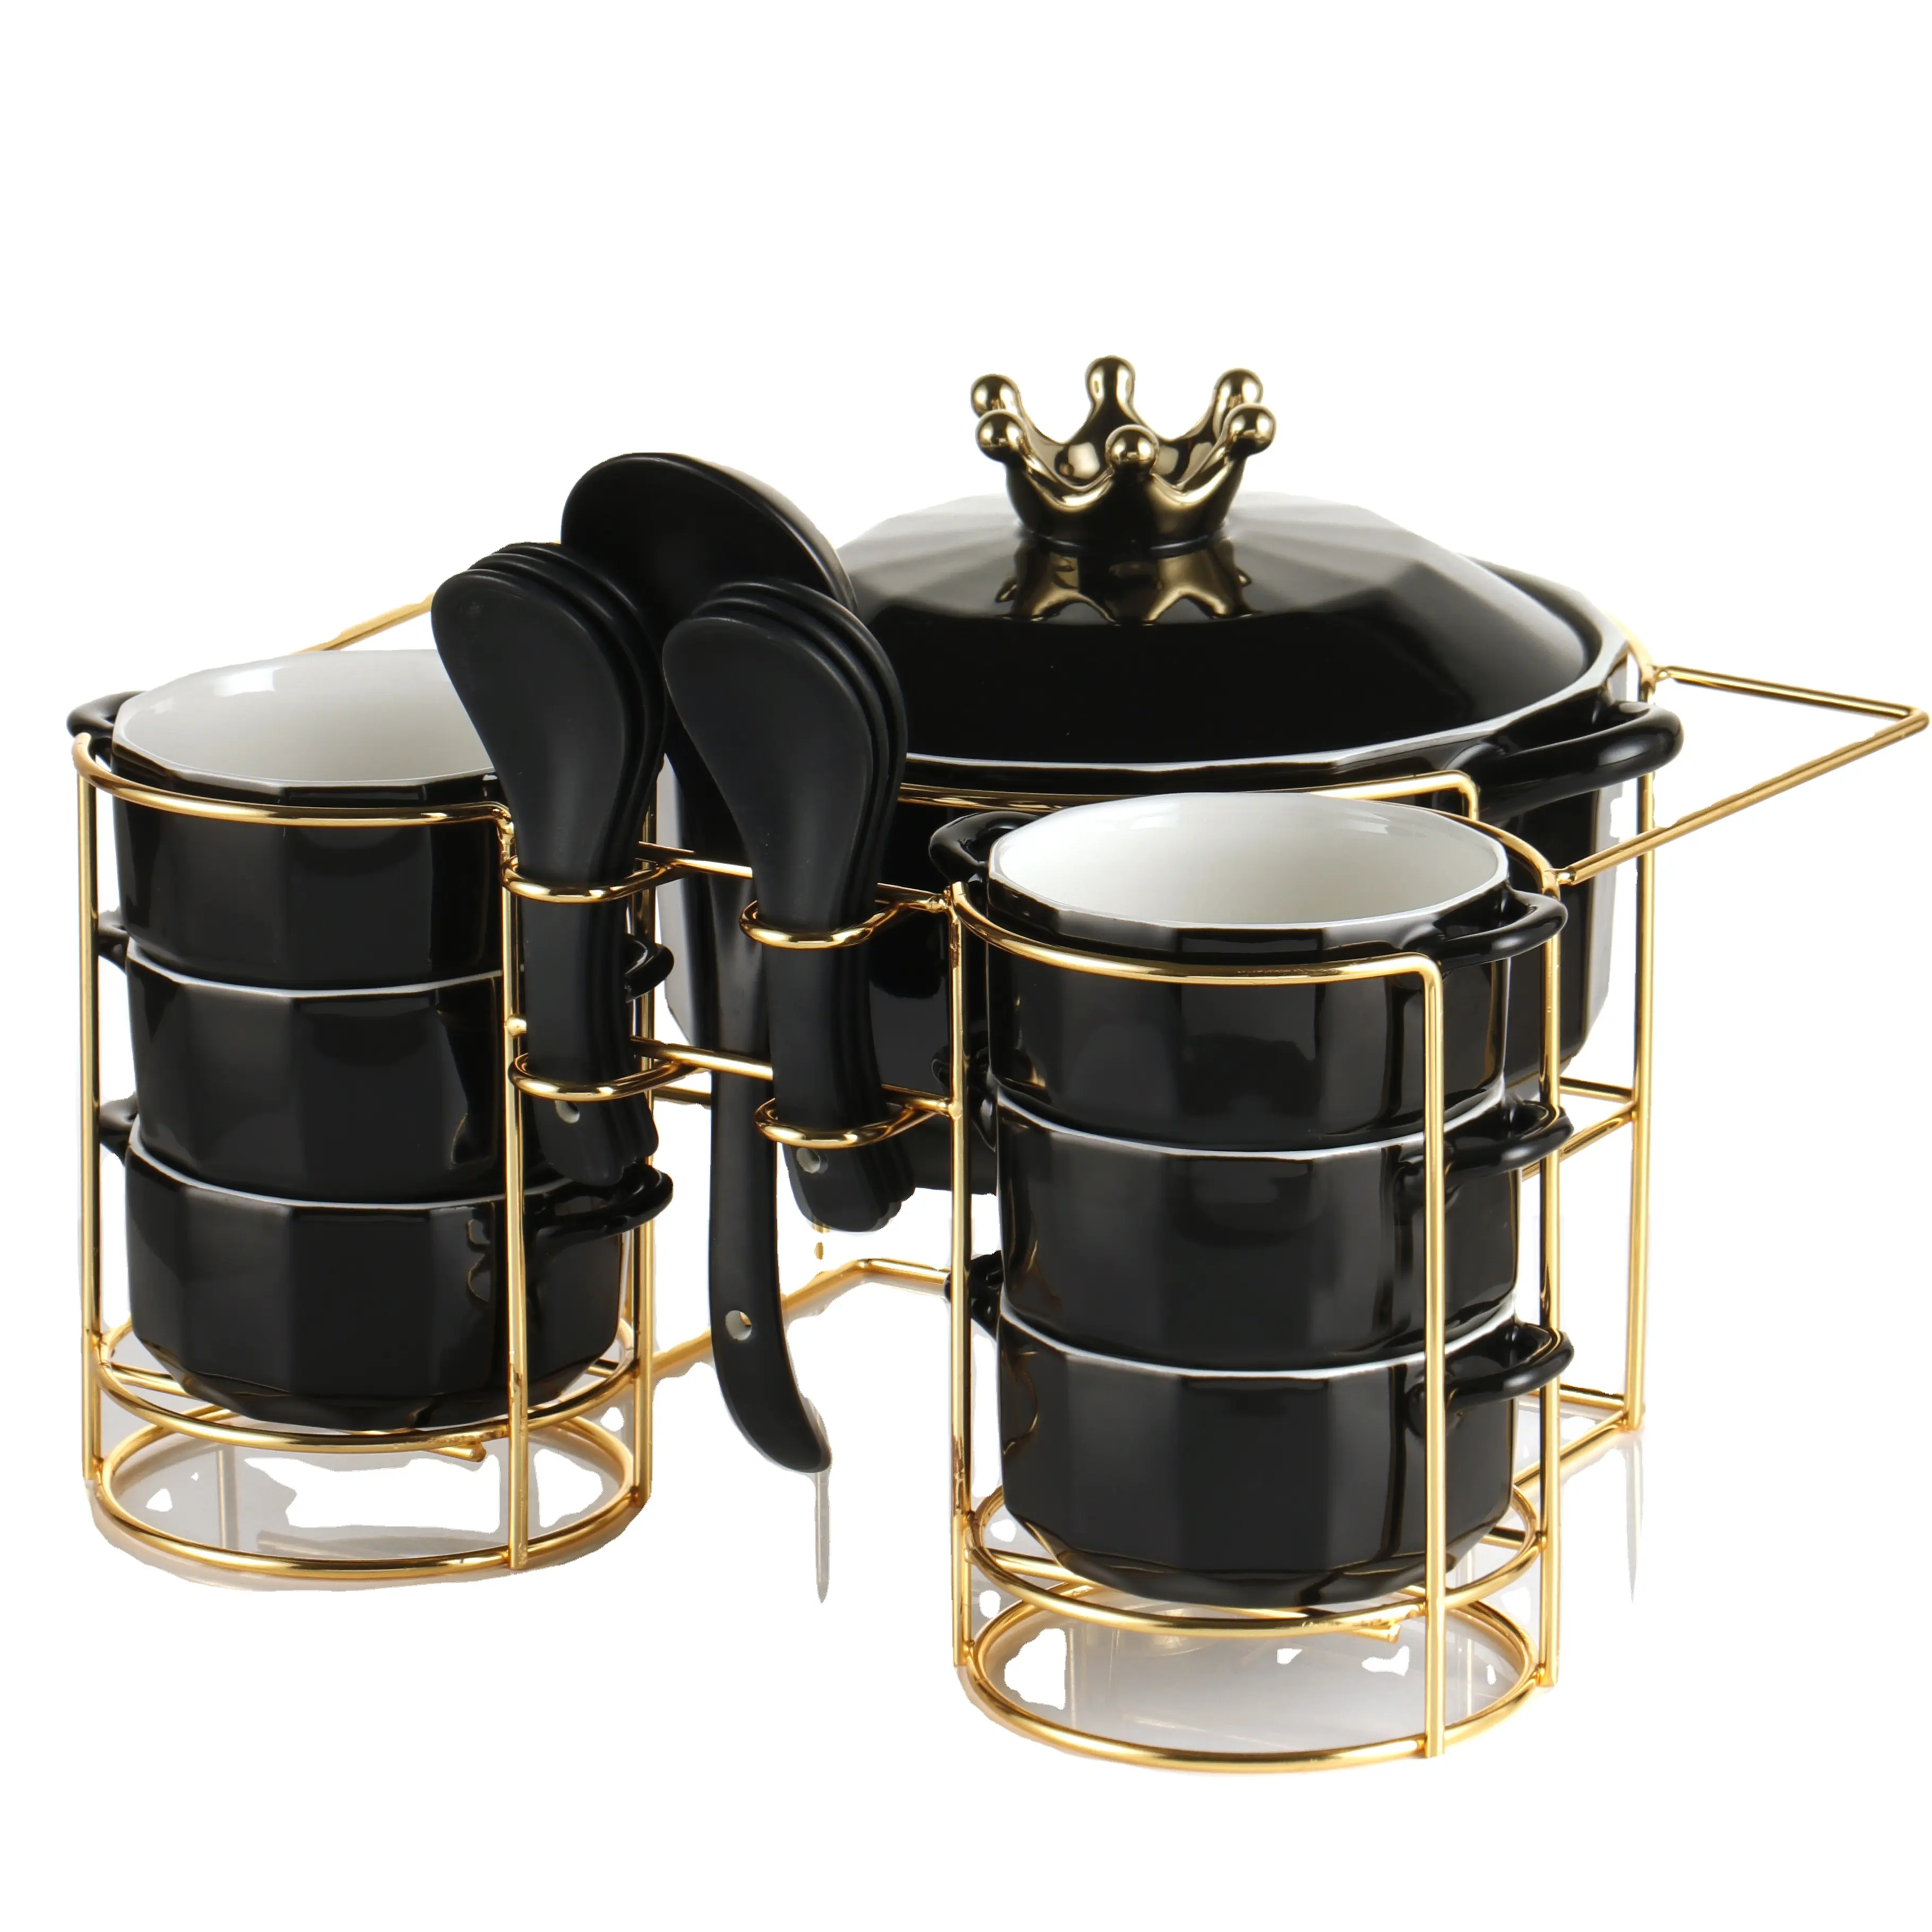 Cucchiaio da minestra in ceramica nera smaltata dal design moderno di nuovo prodotto e struttura in ferro dorato